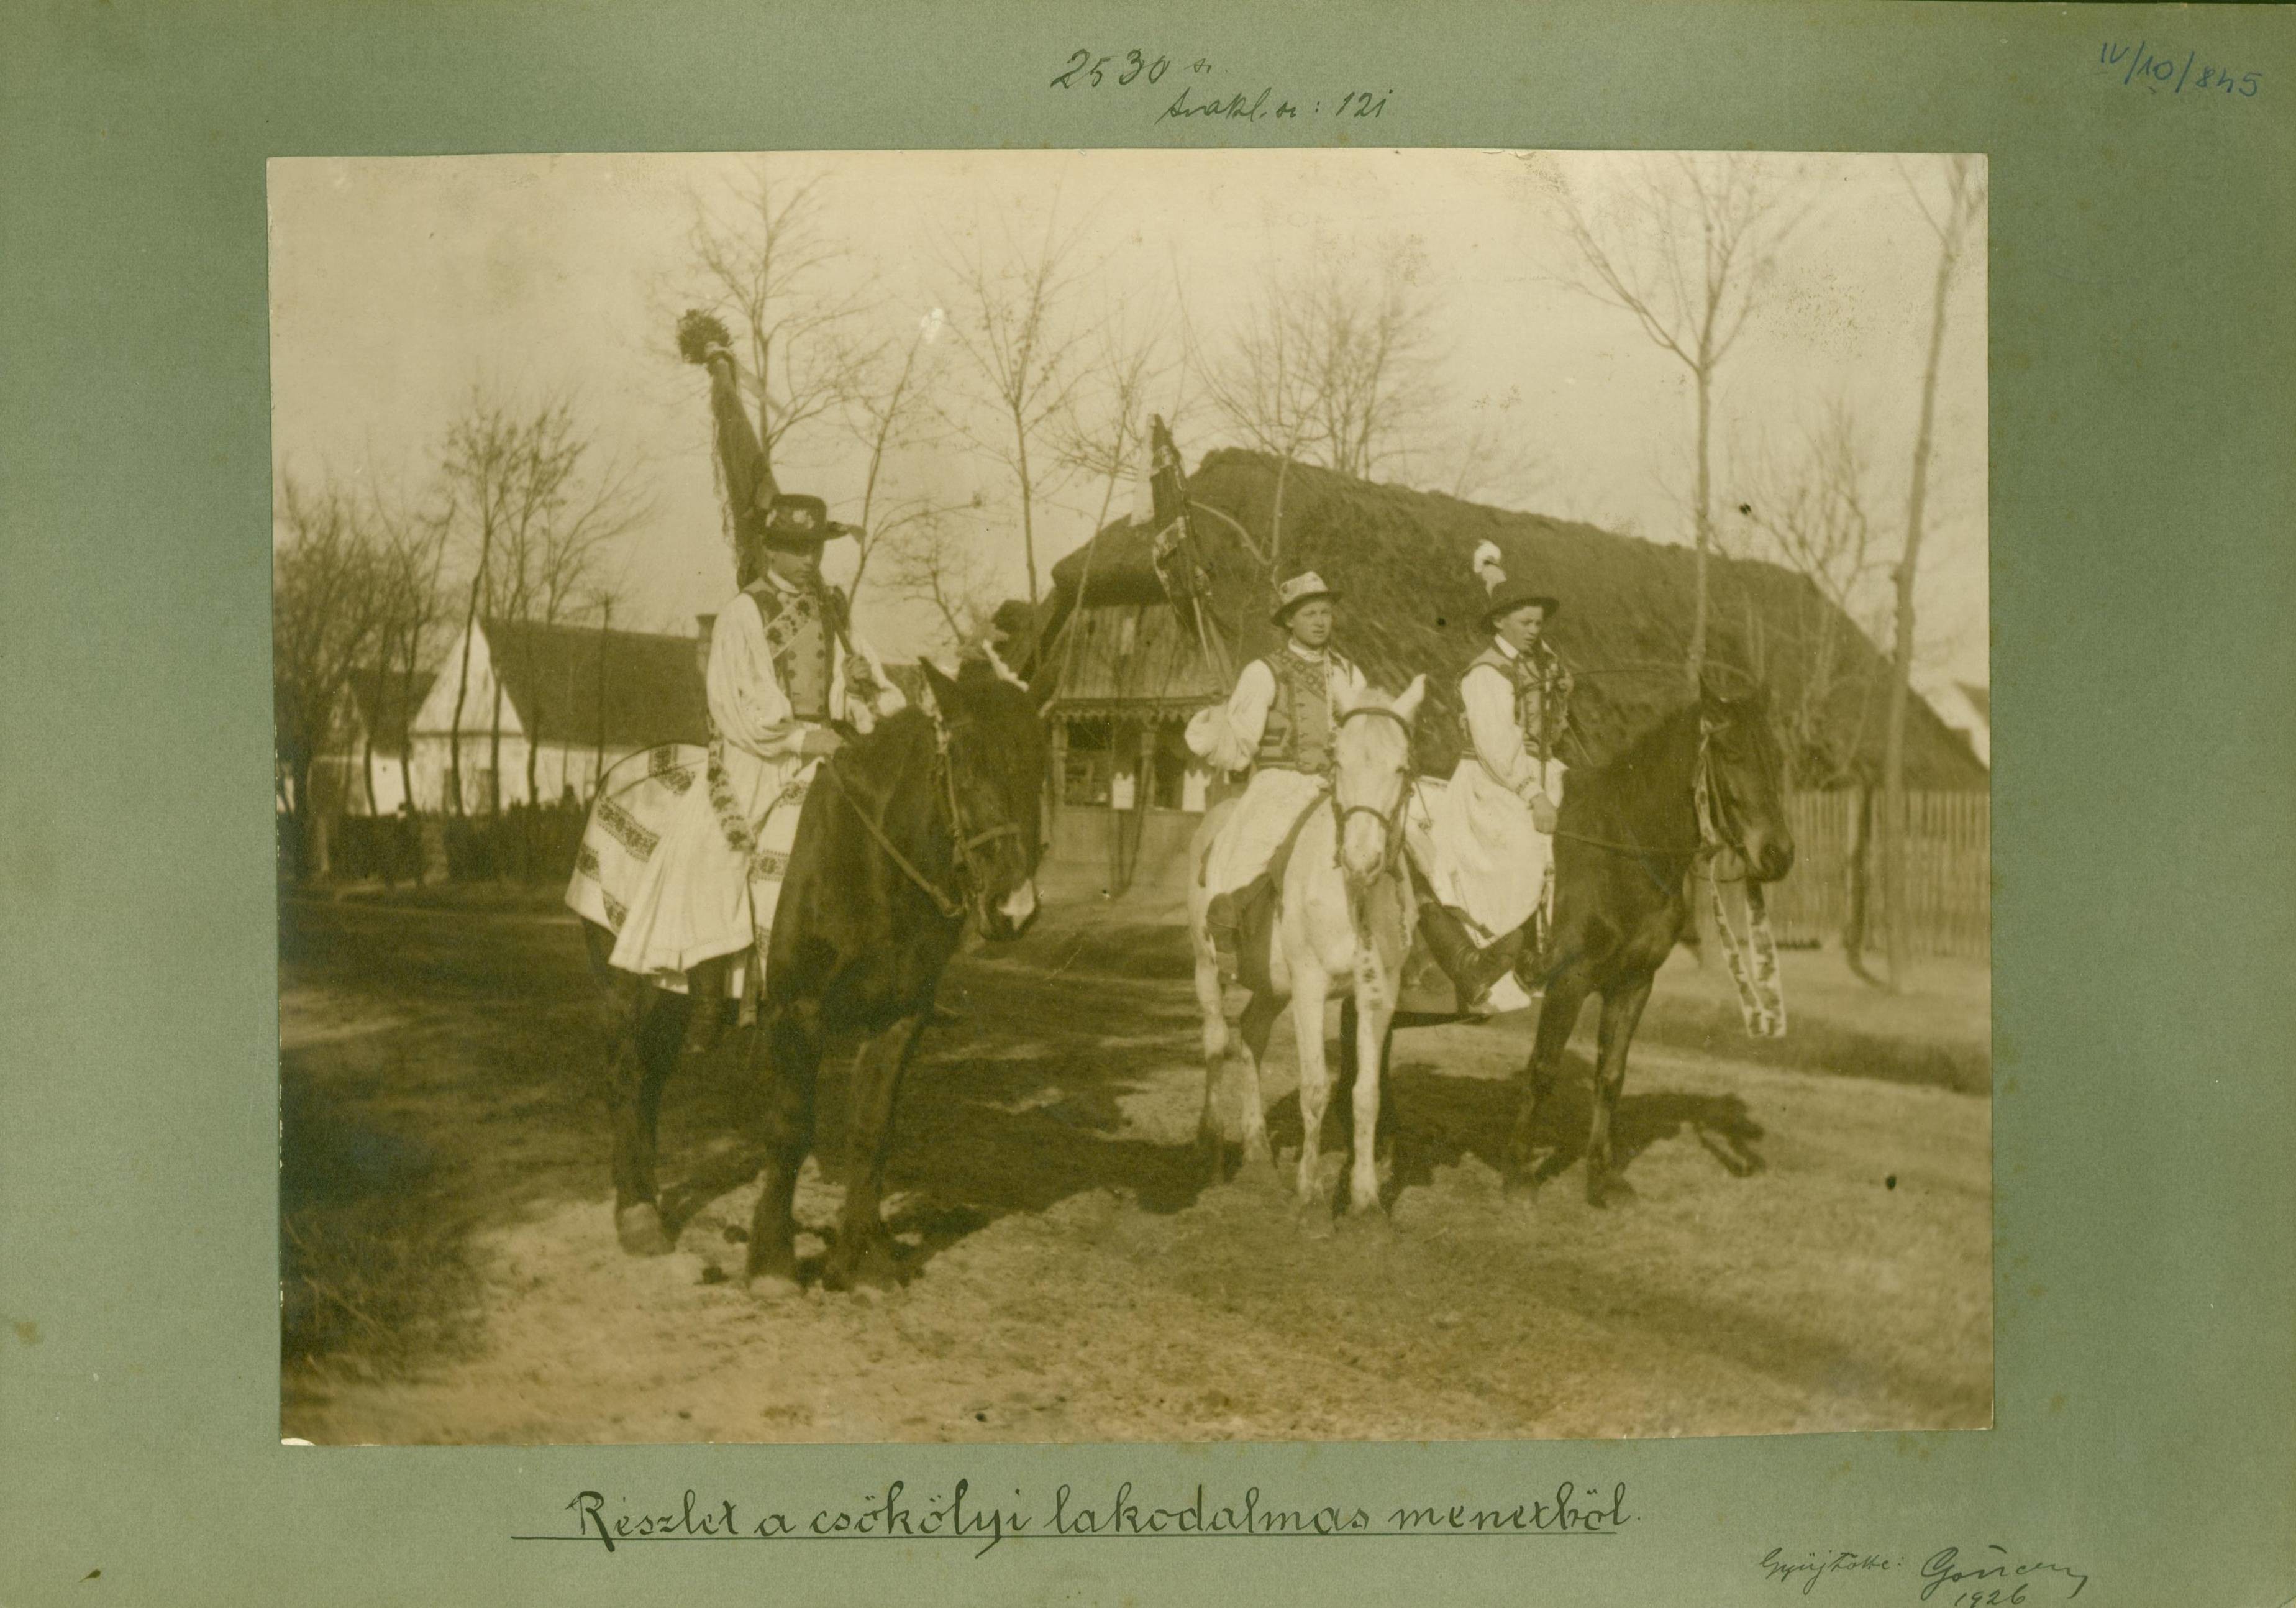 Részlet a csökölyi lakodalmas menetből, 1926 (Rippl-Rónai Múzeum RR-F)